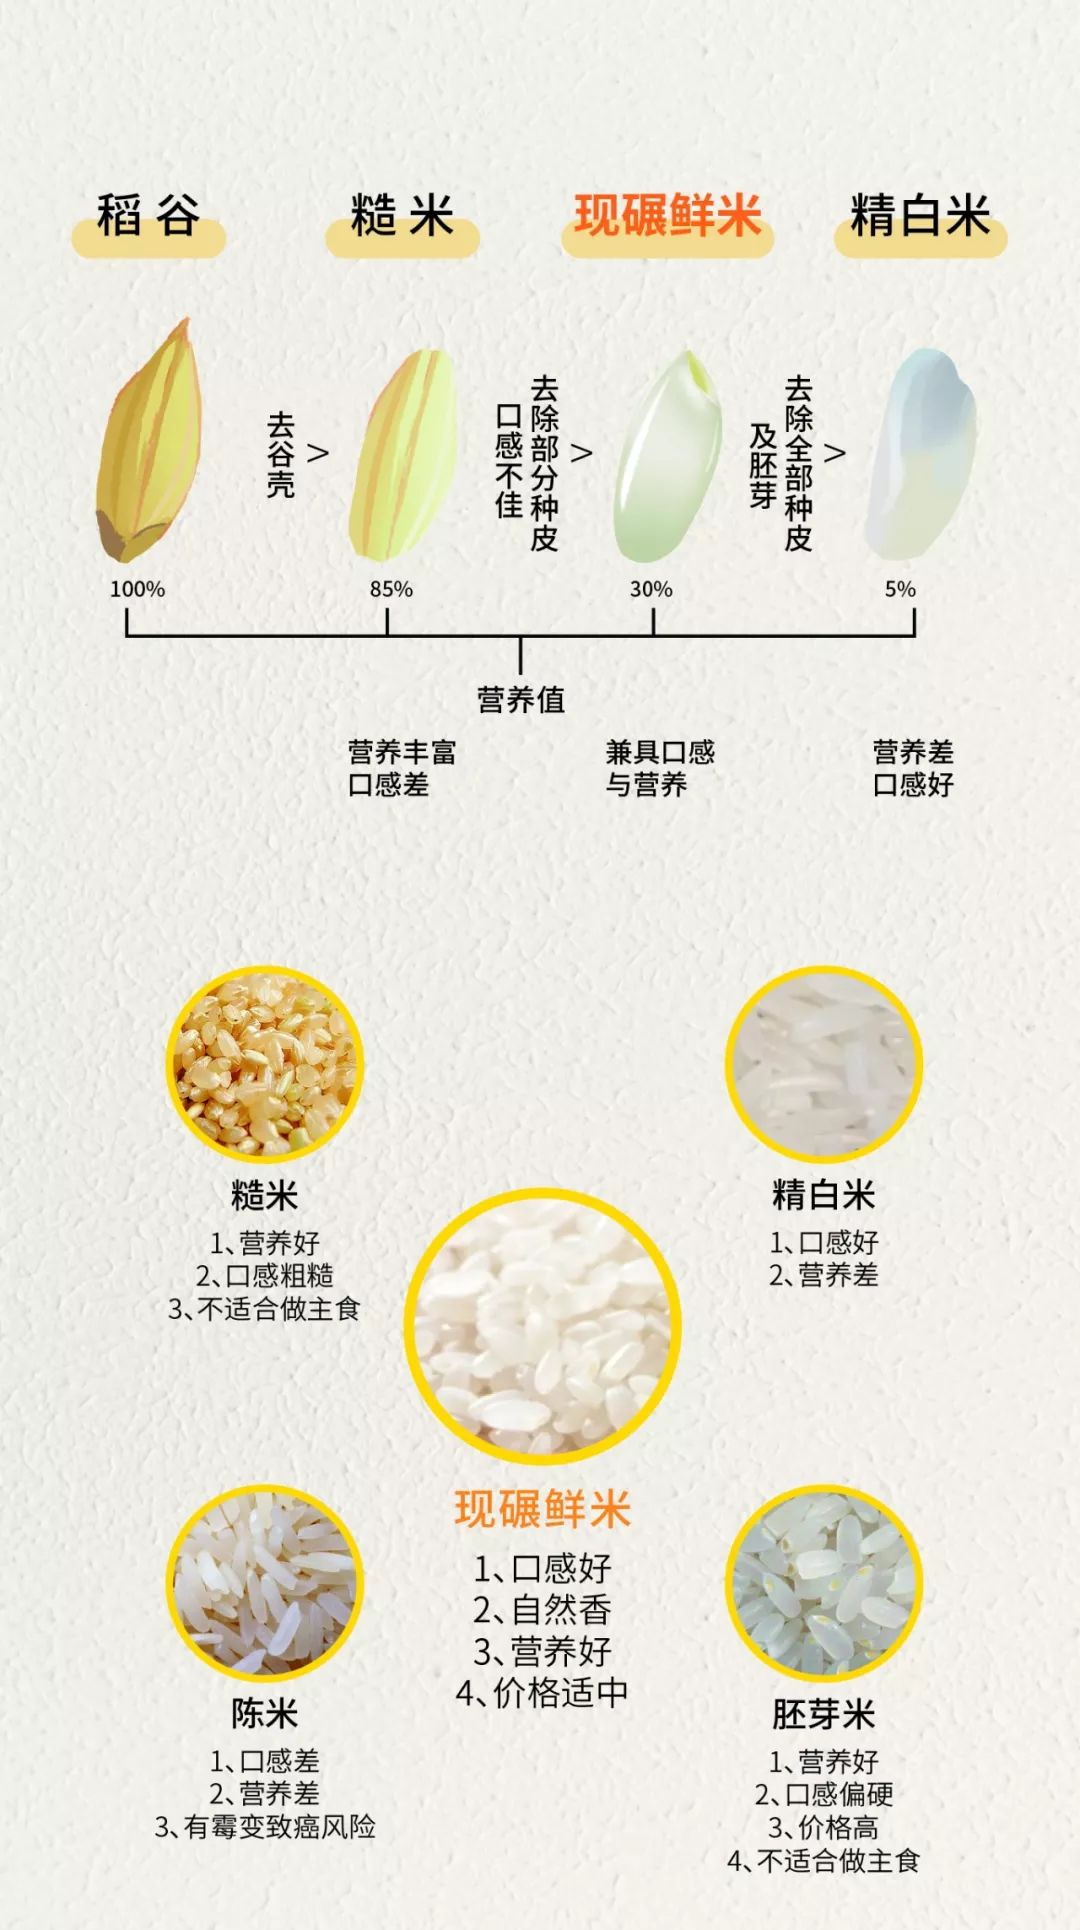 而五坤谷相较于市场它类大米,兼具营养与口感,并散发着纯天然的米香!